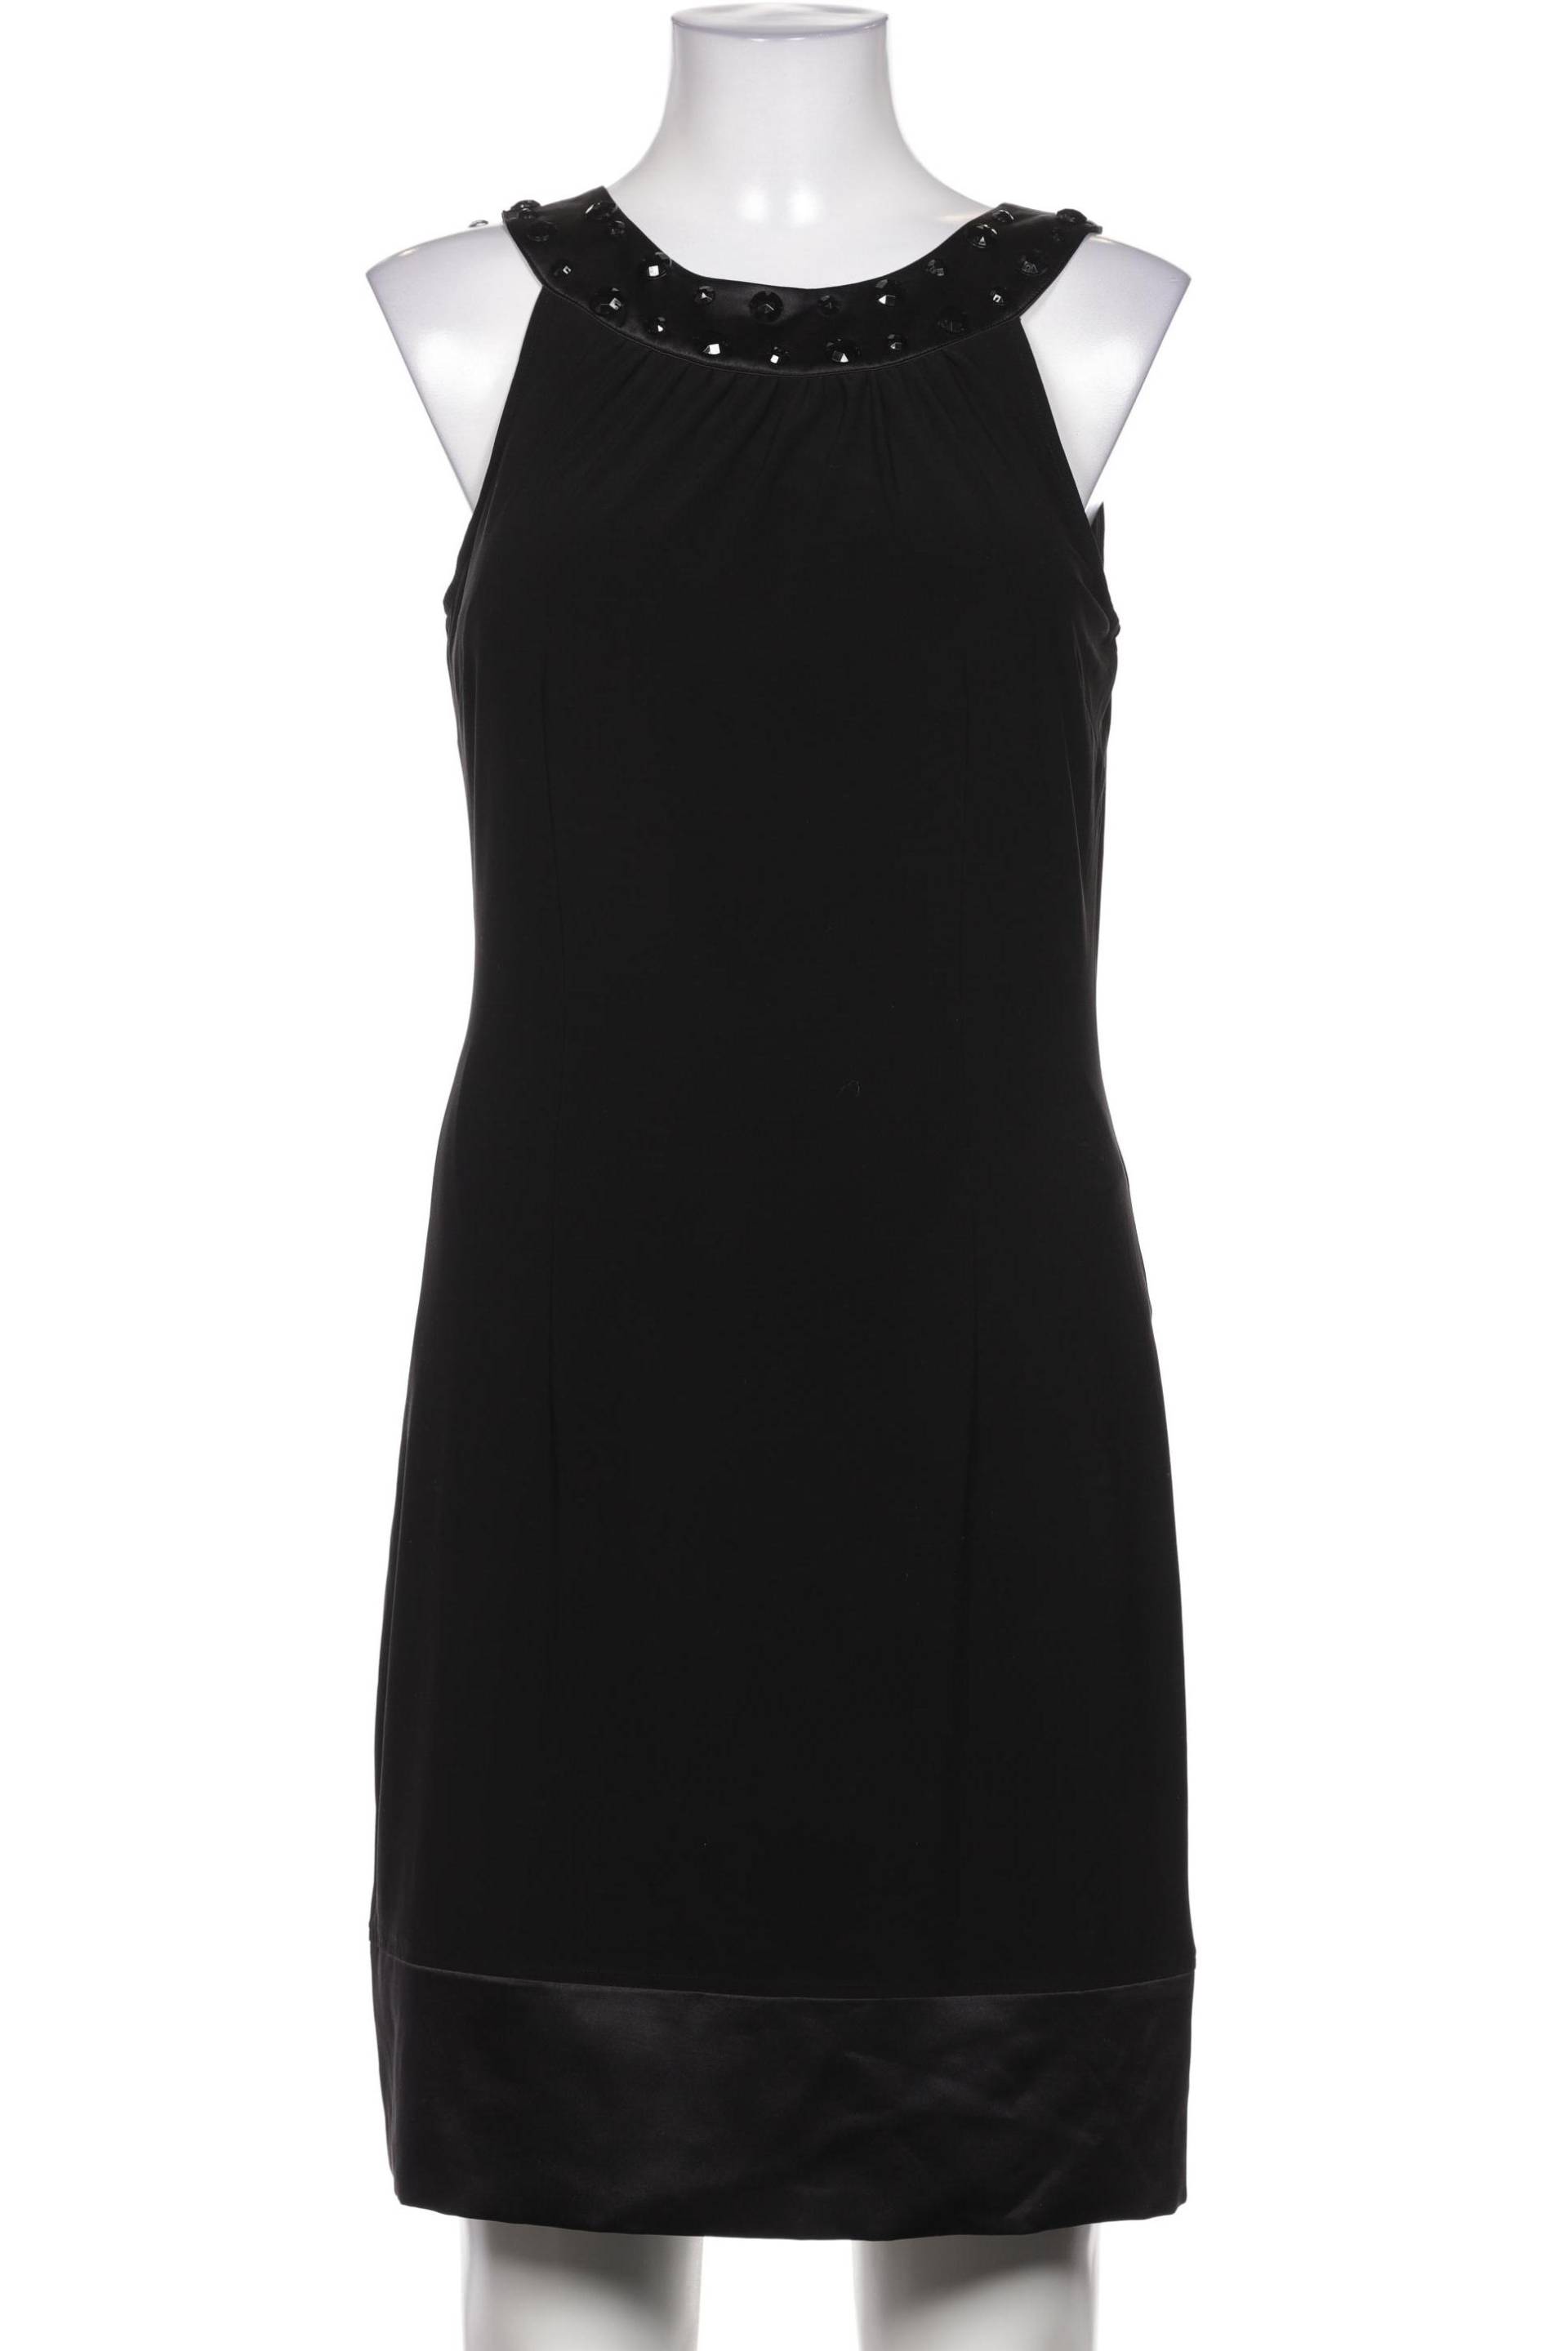 s.Oliver Selection Damen Kleid, schwarz, Gr. 38 von s.Oliver Selection